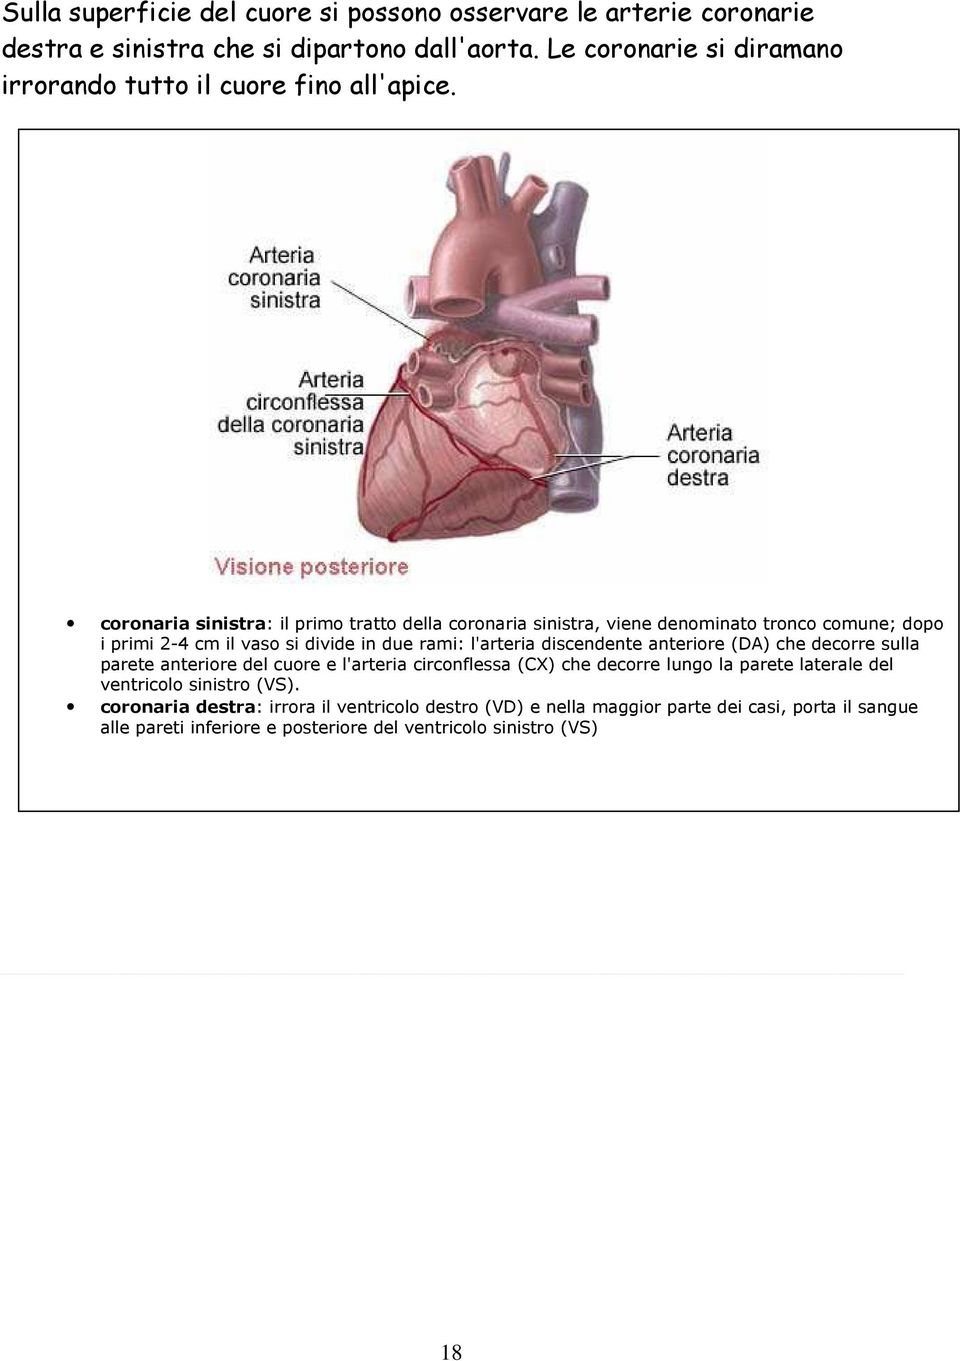 coronaria sinistra: il primo tratto della coronaria sinistra, viene denominato tronco comune; dopo i primi 2-4 cm il vaso si divide in due rami: l'arteria discendente